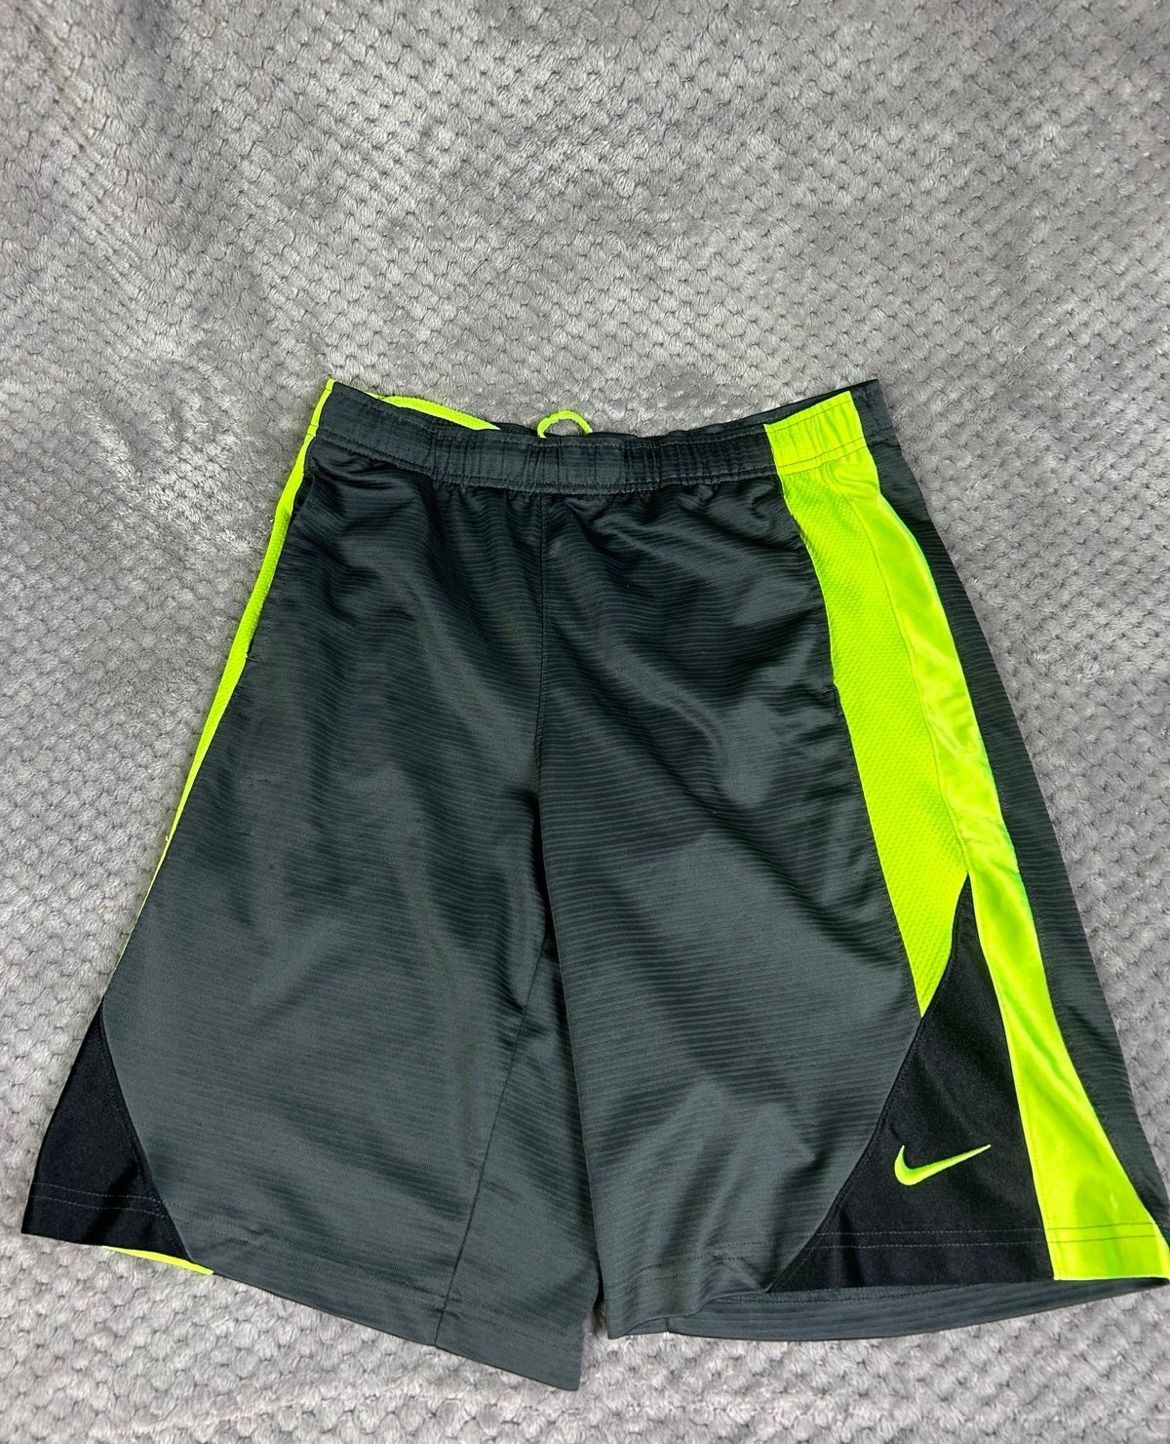 Size Large Nike Shorts